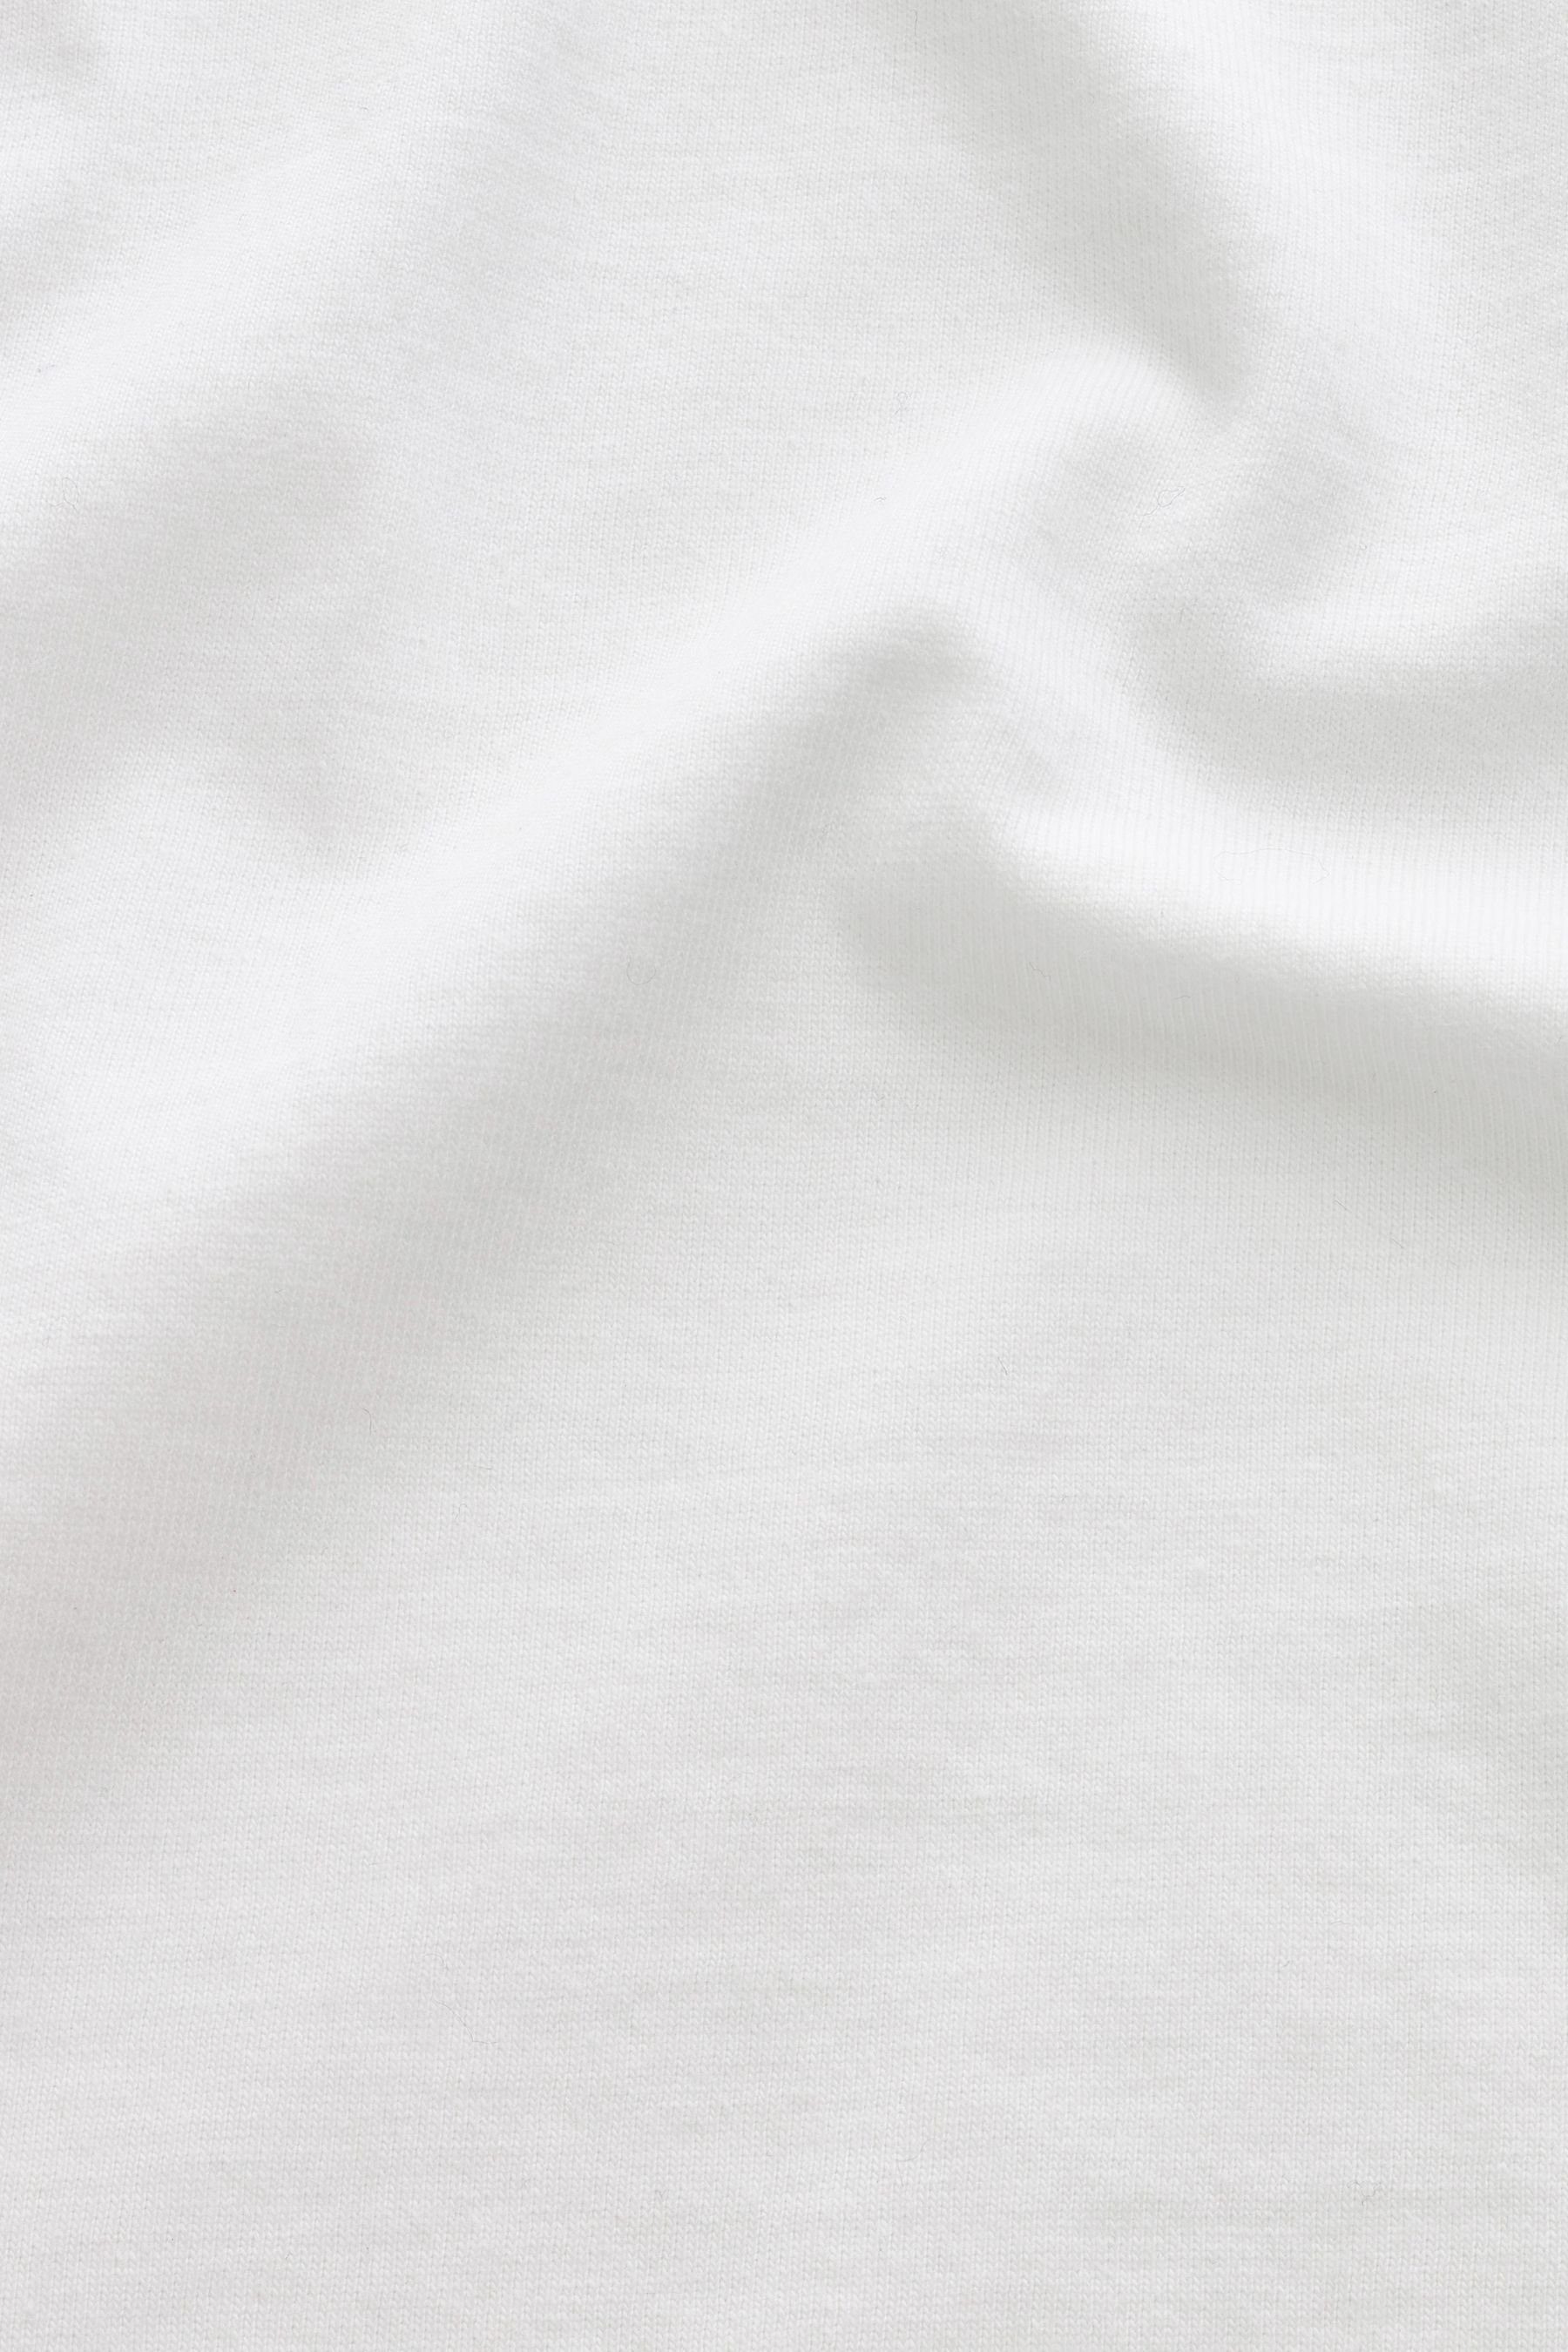 Next T-Shirt T-Shirt mit White/Green (1-tlg) Grafikprint